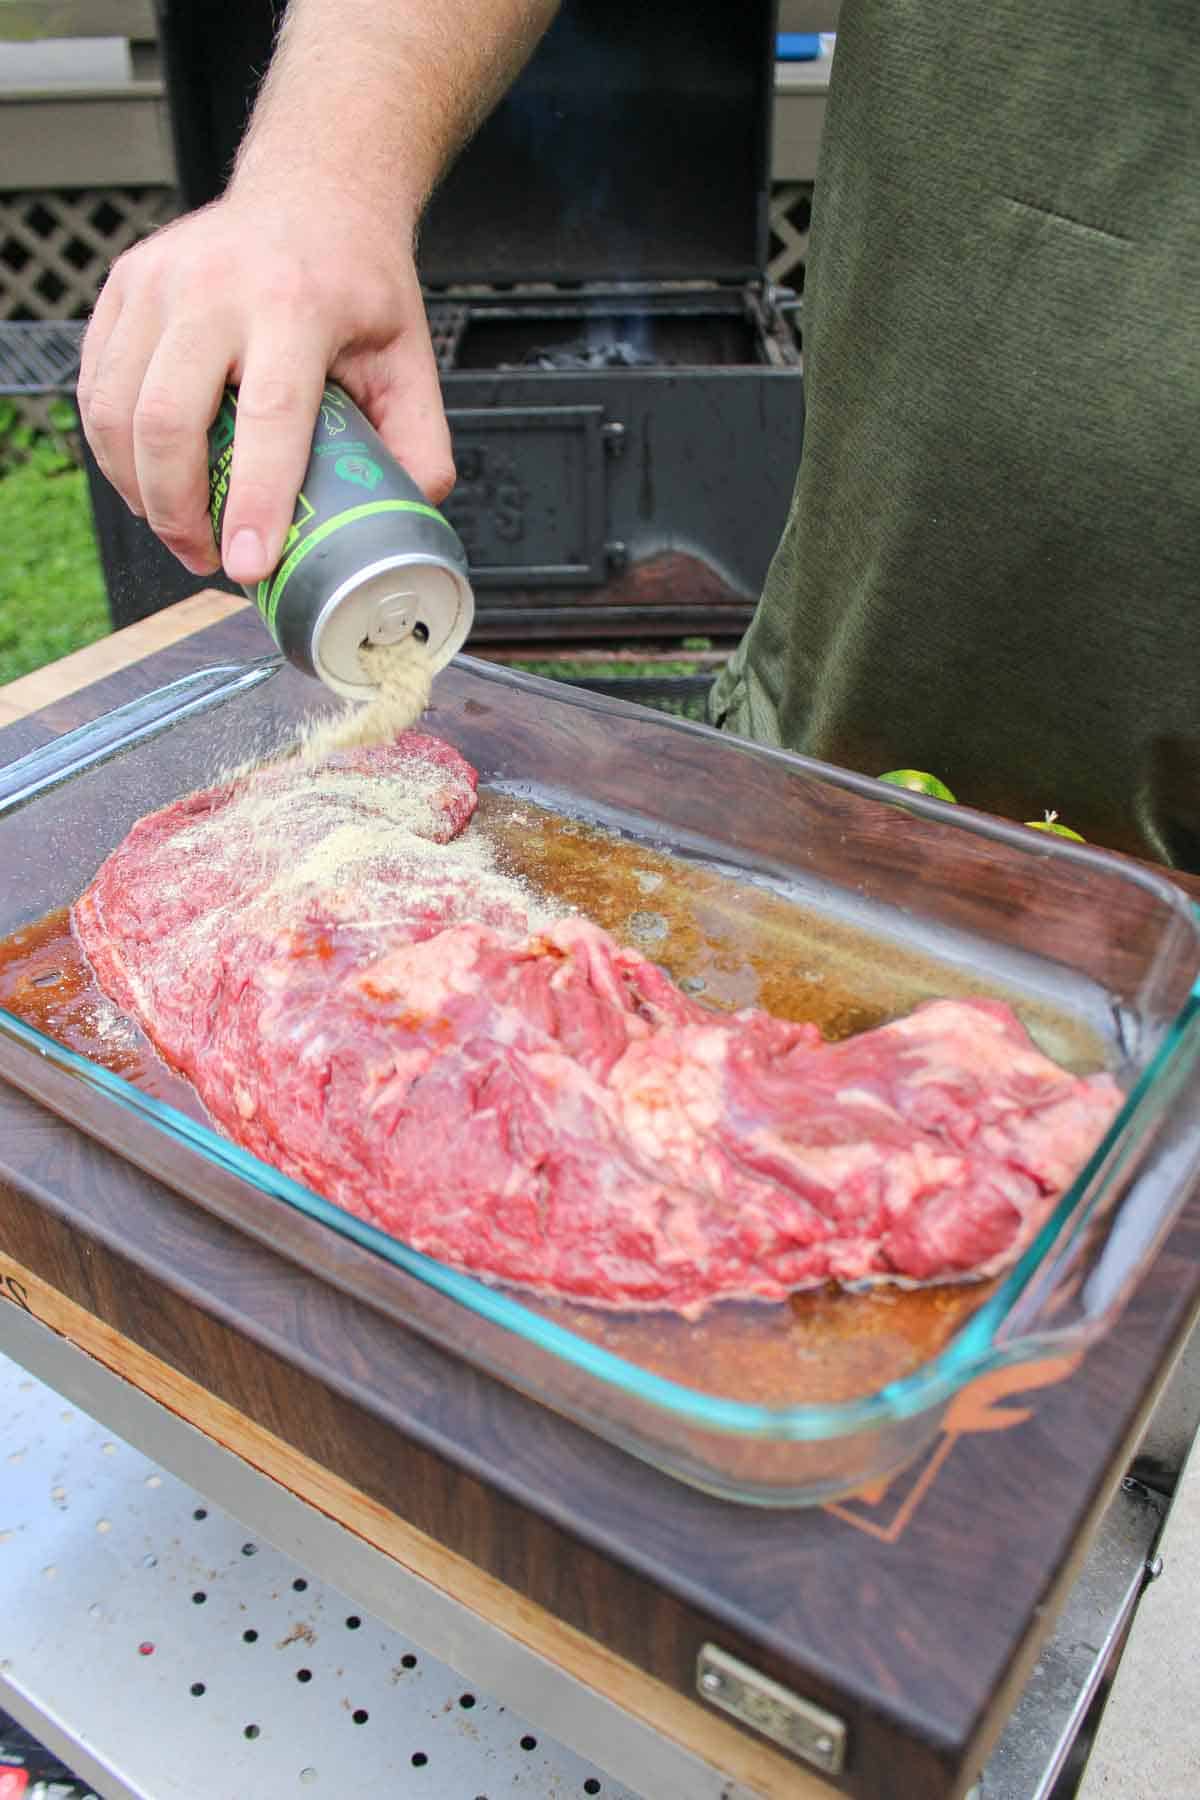 The flap steak is seasoned. 